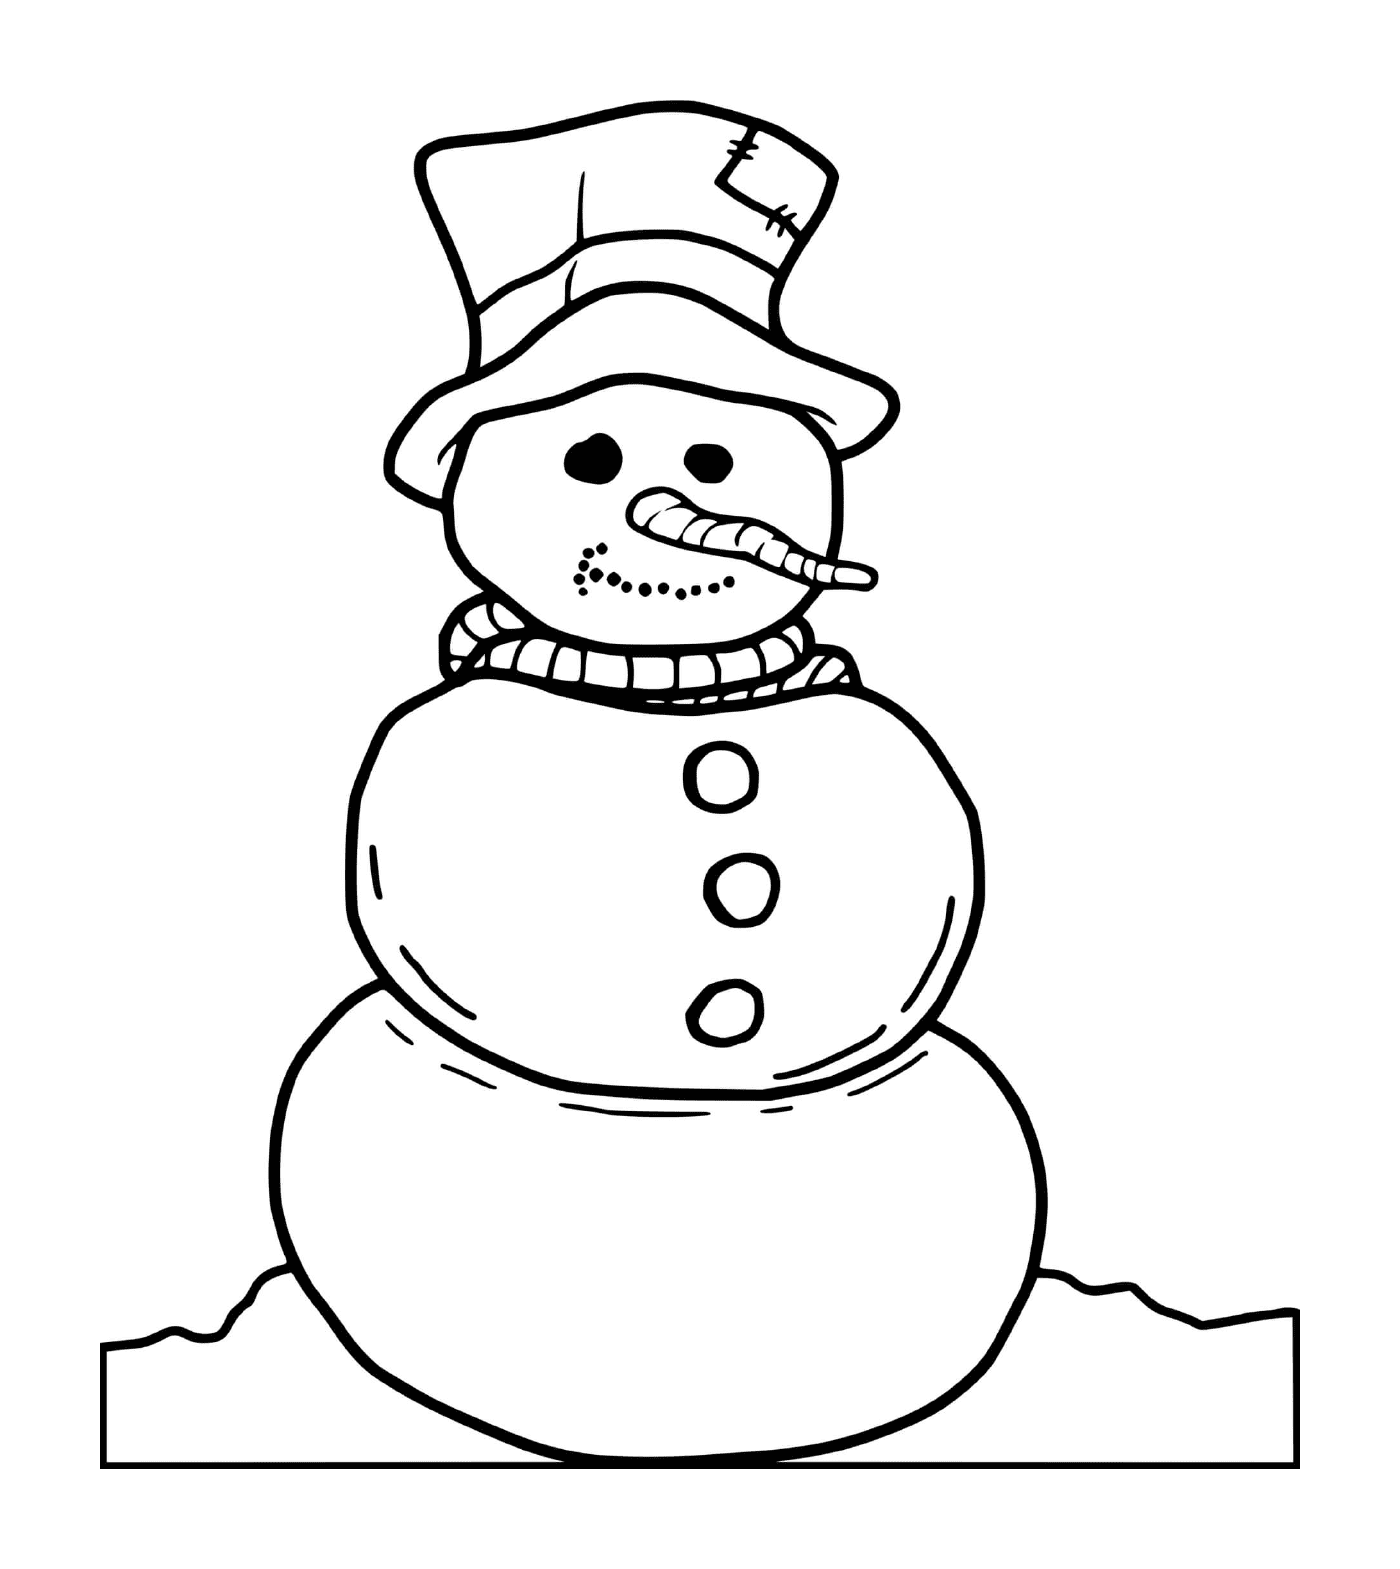  Homem de neve sem braços 